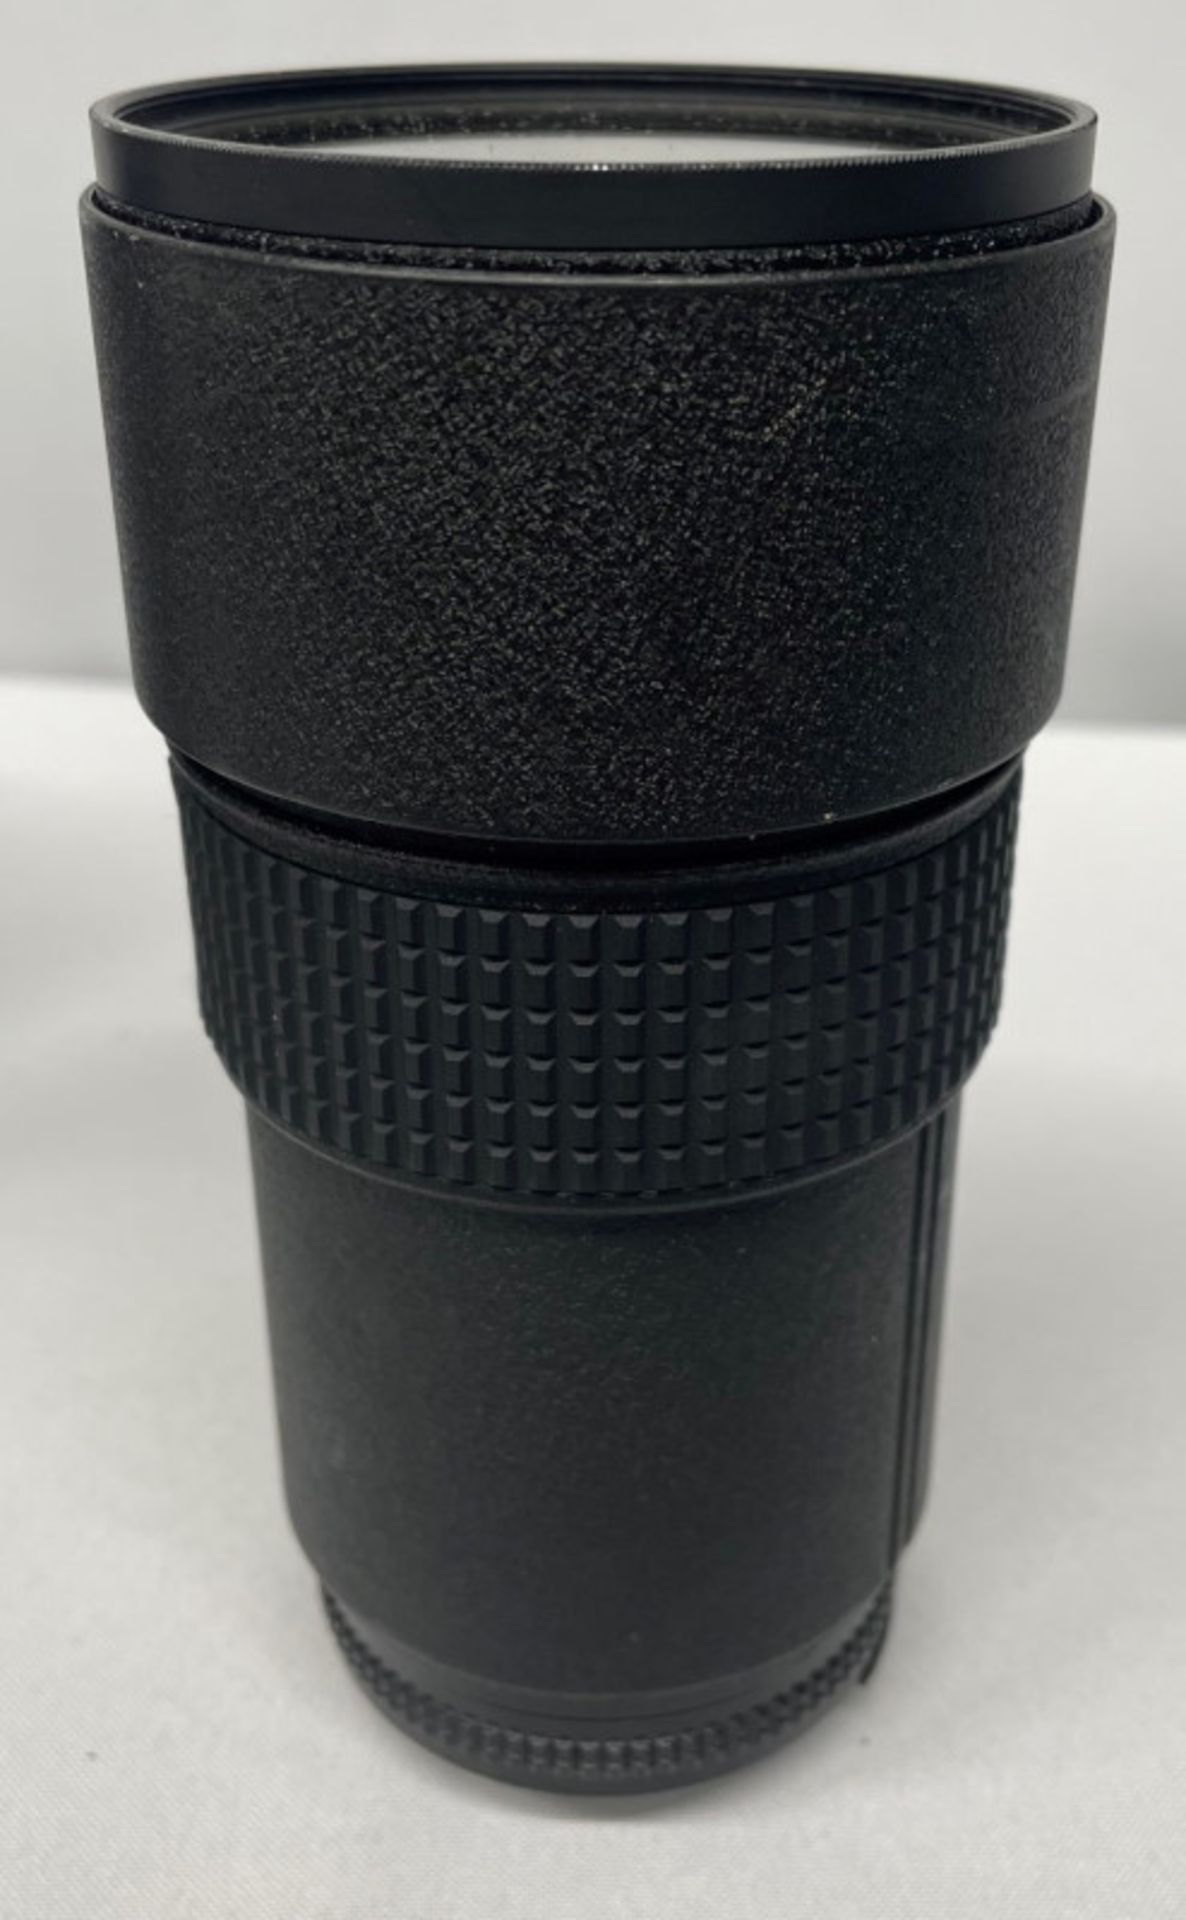 Nikon ED AF Nikkor 180mm - 1:2.8 Lens - Serial No. 272140 with HOYA 72mm UV(O) Filter in Nikon case - Image 4 of 7